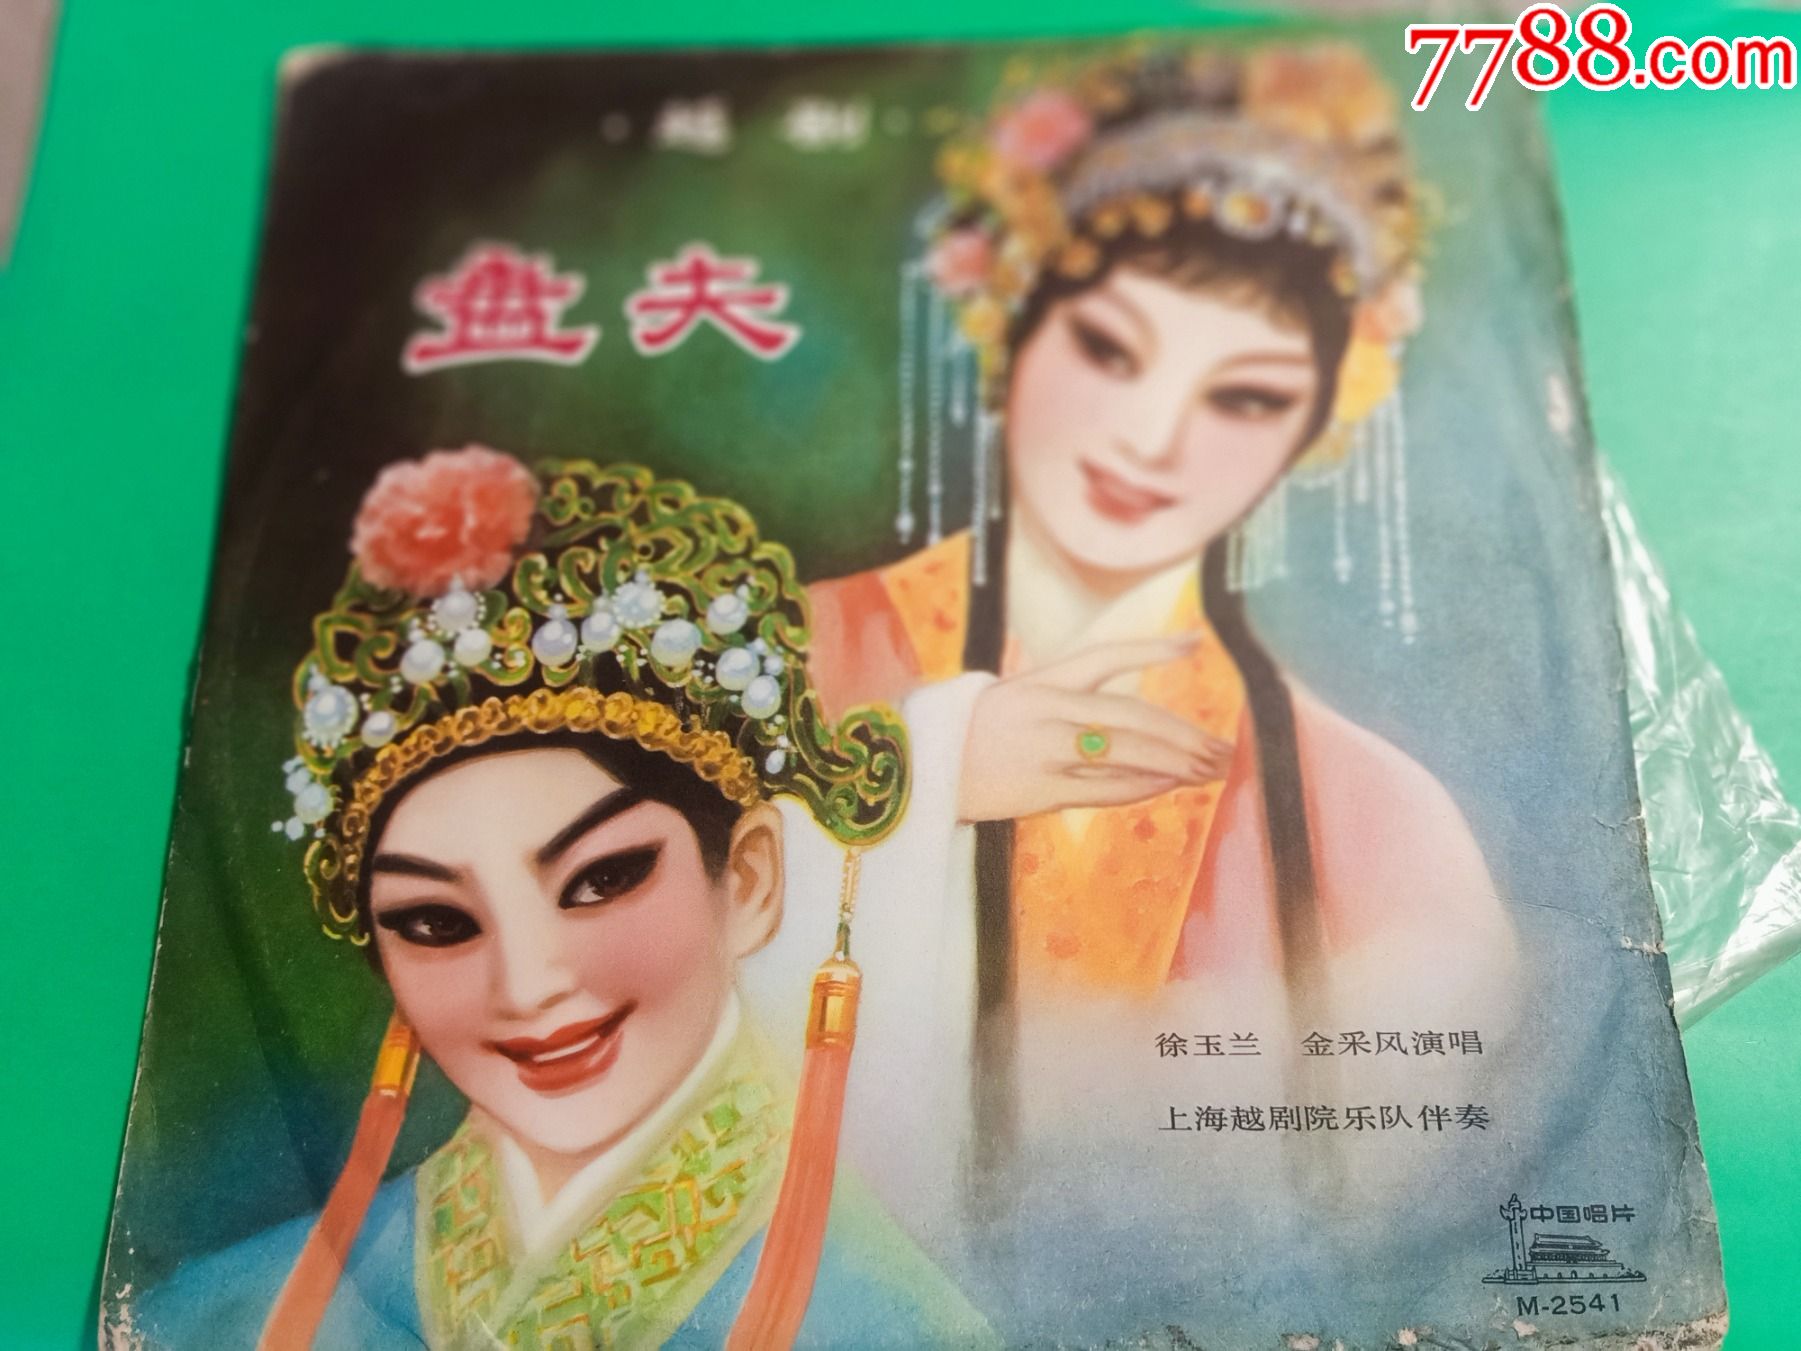 越剧盘夫12面黑胶唱片徐玉兰金采风演唱1980年出版m254